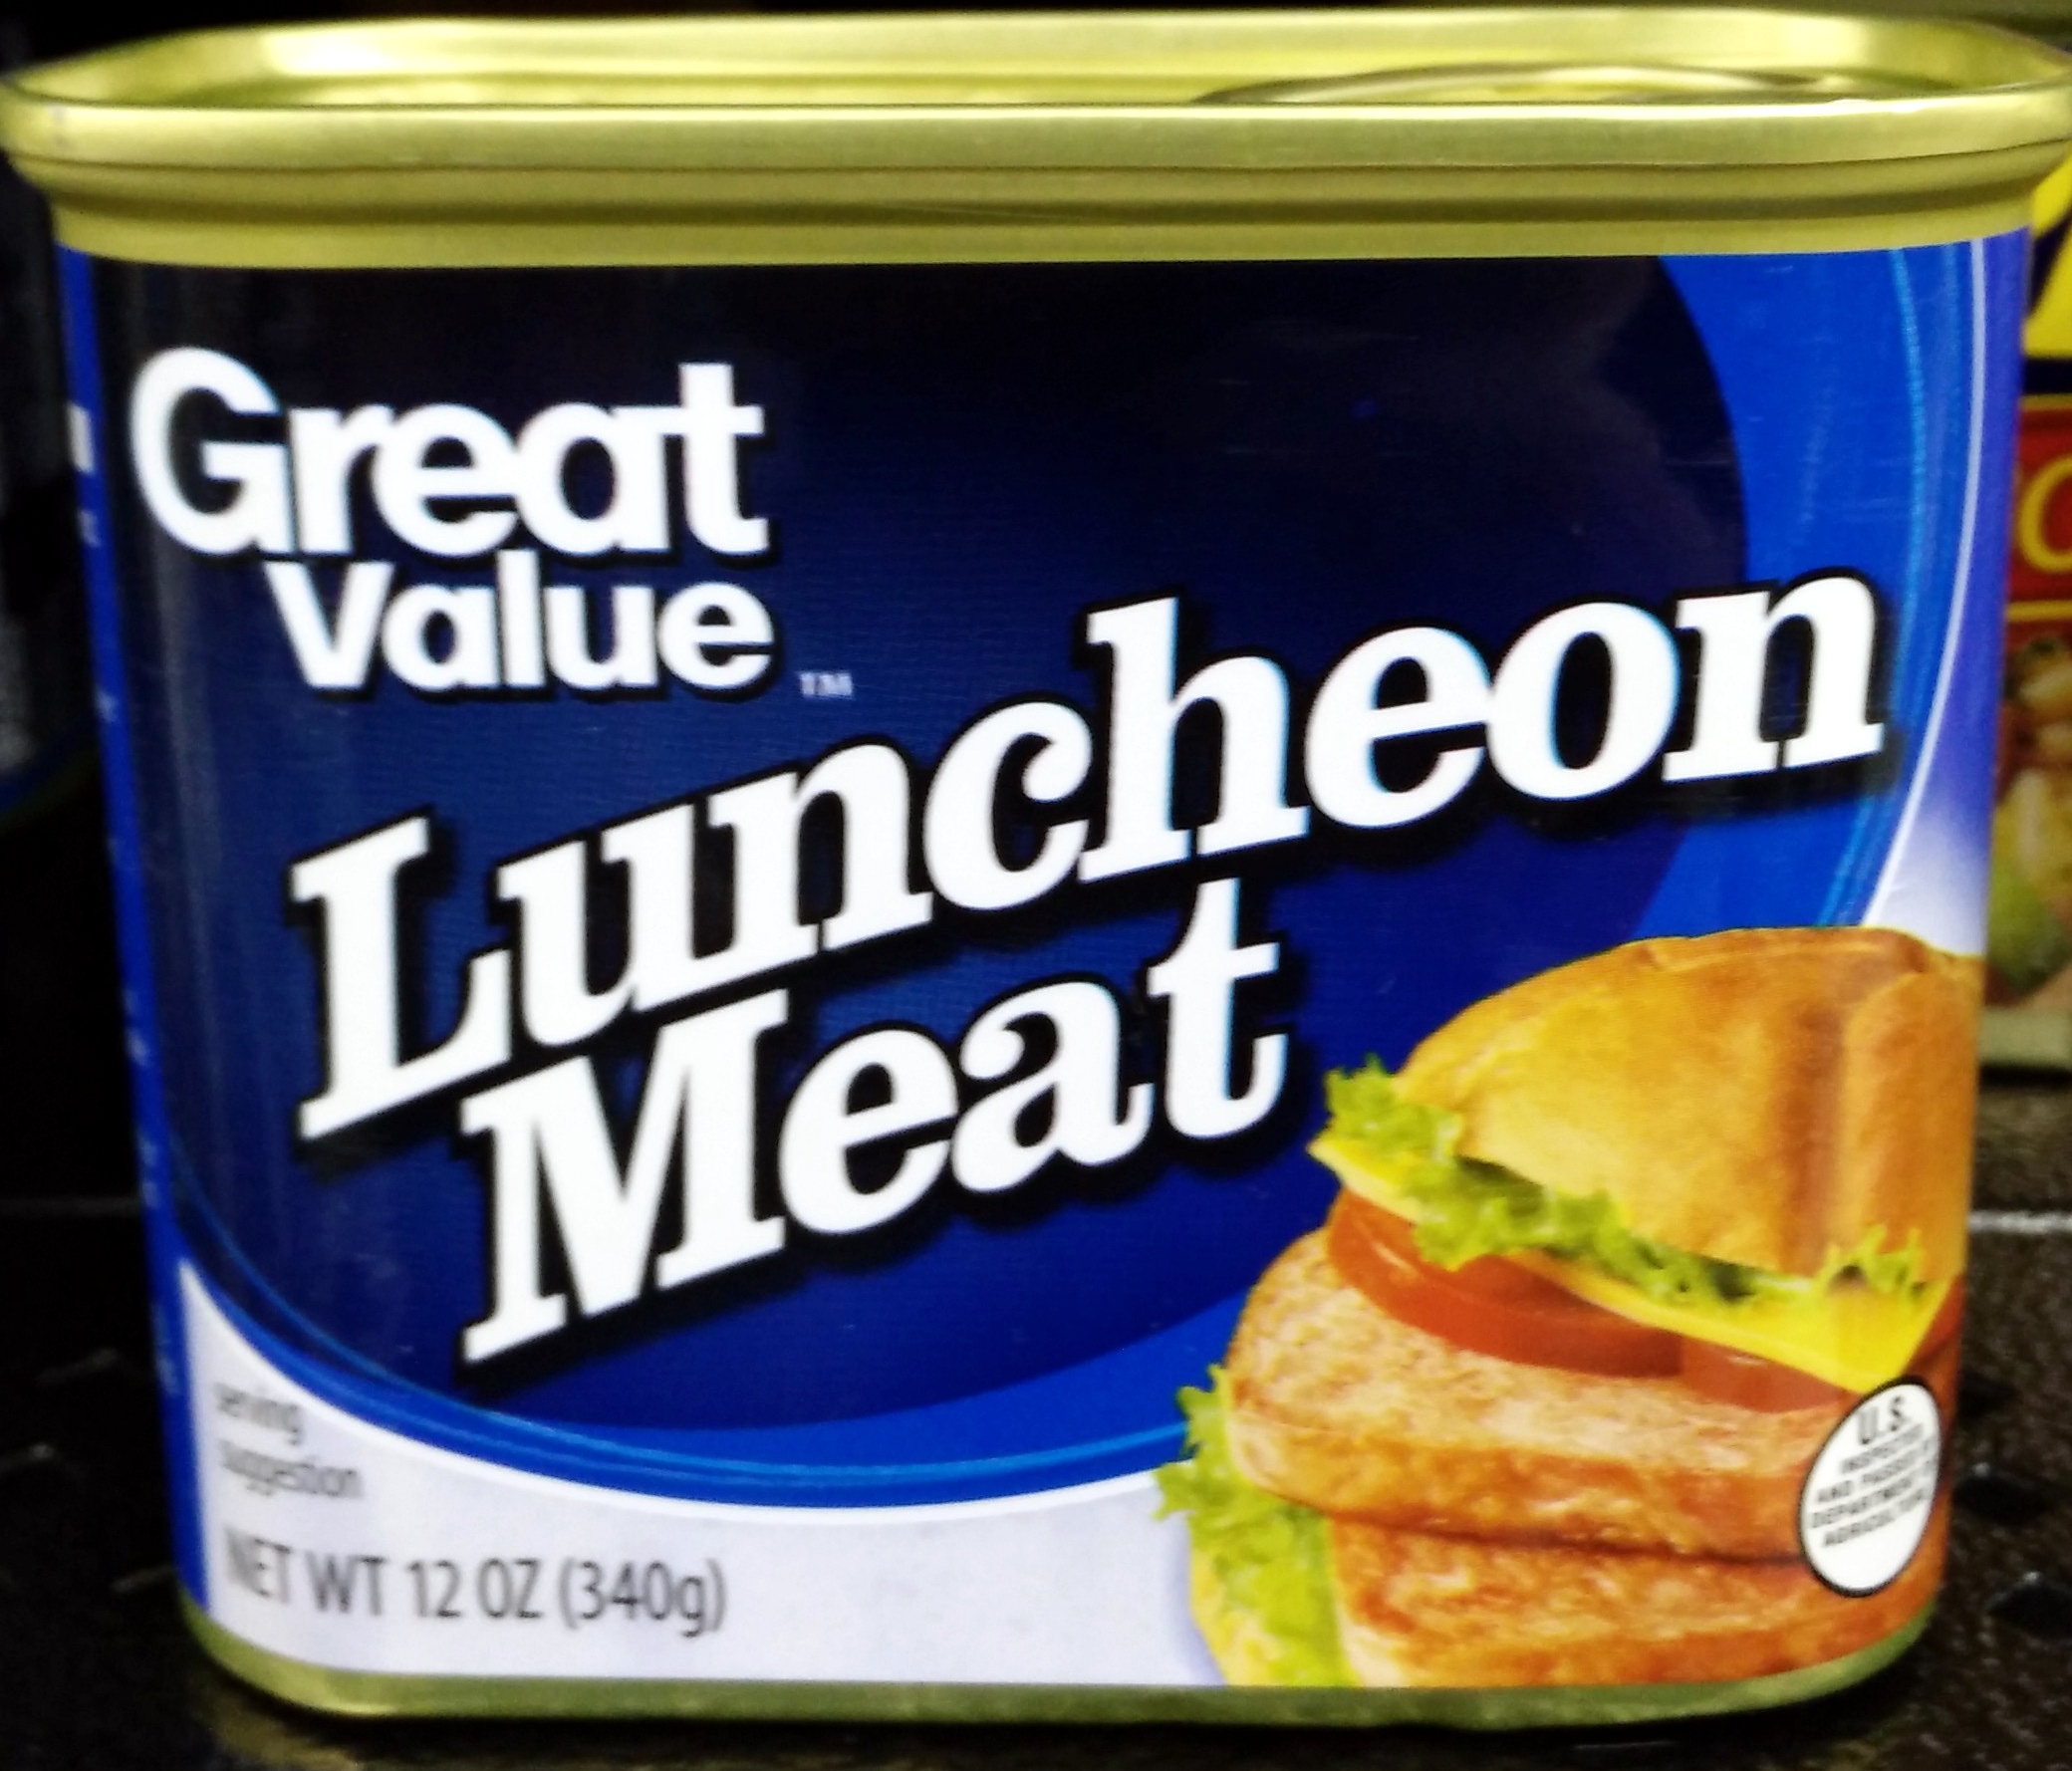 Great value, luncheon meat - Produit - en